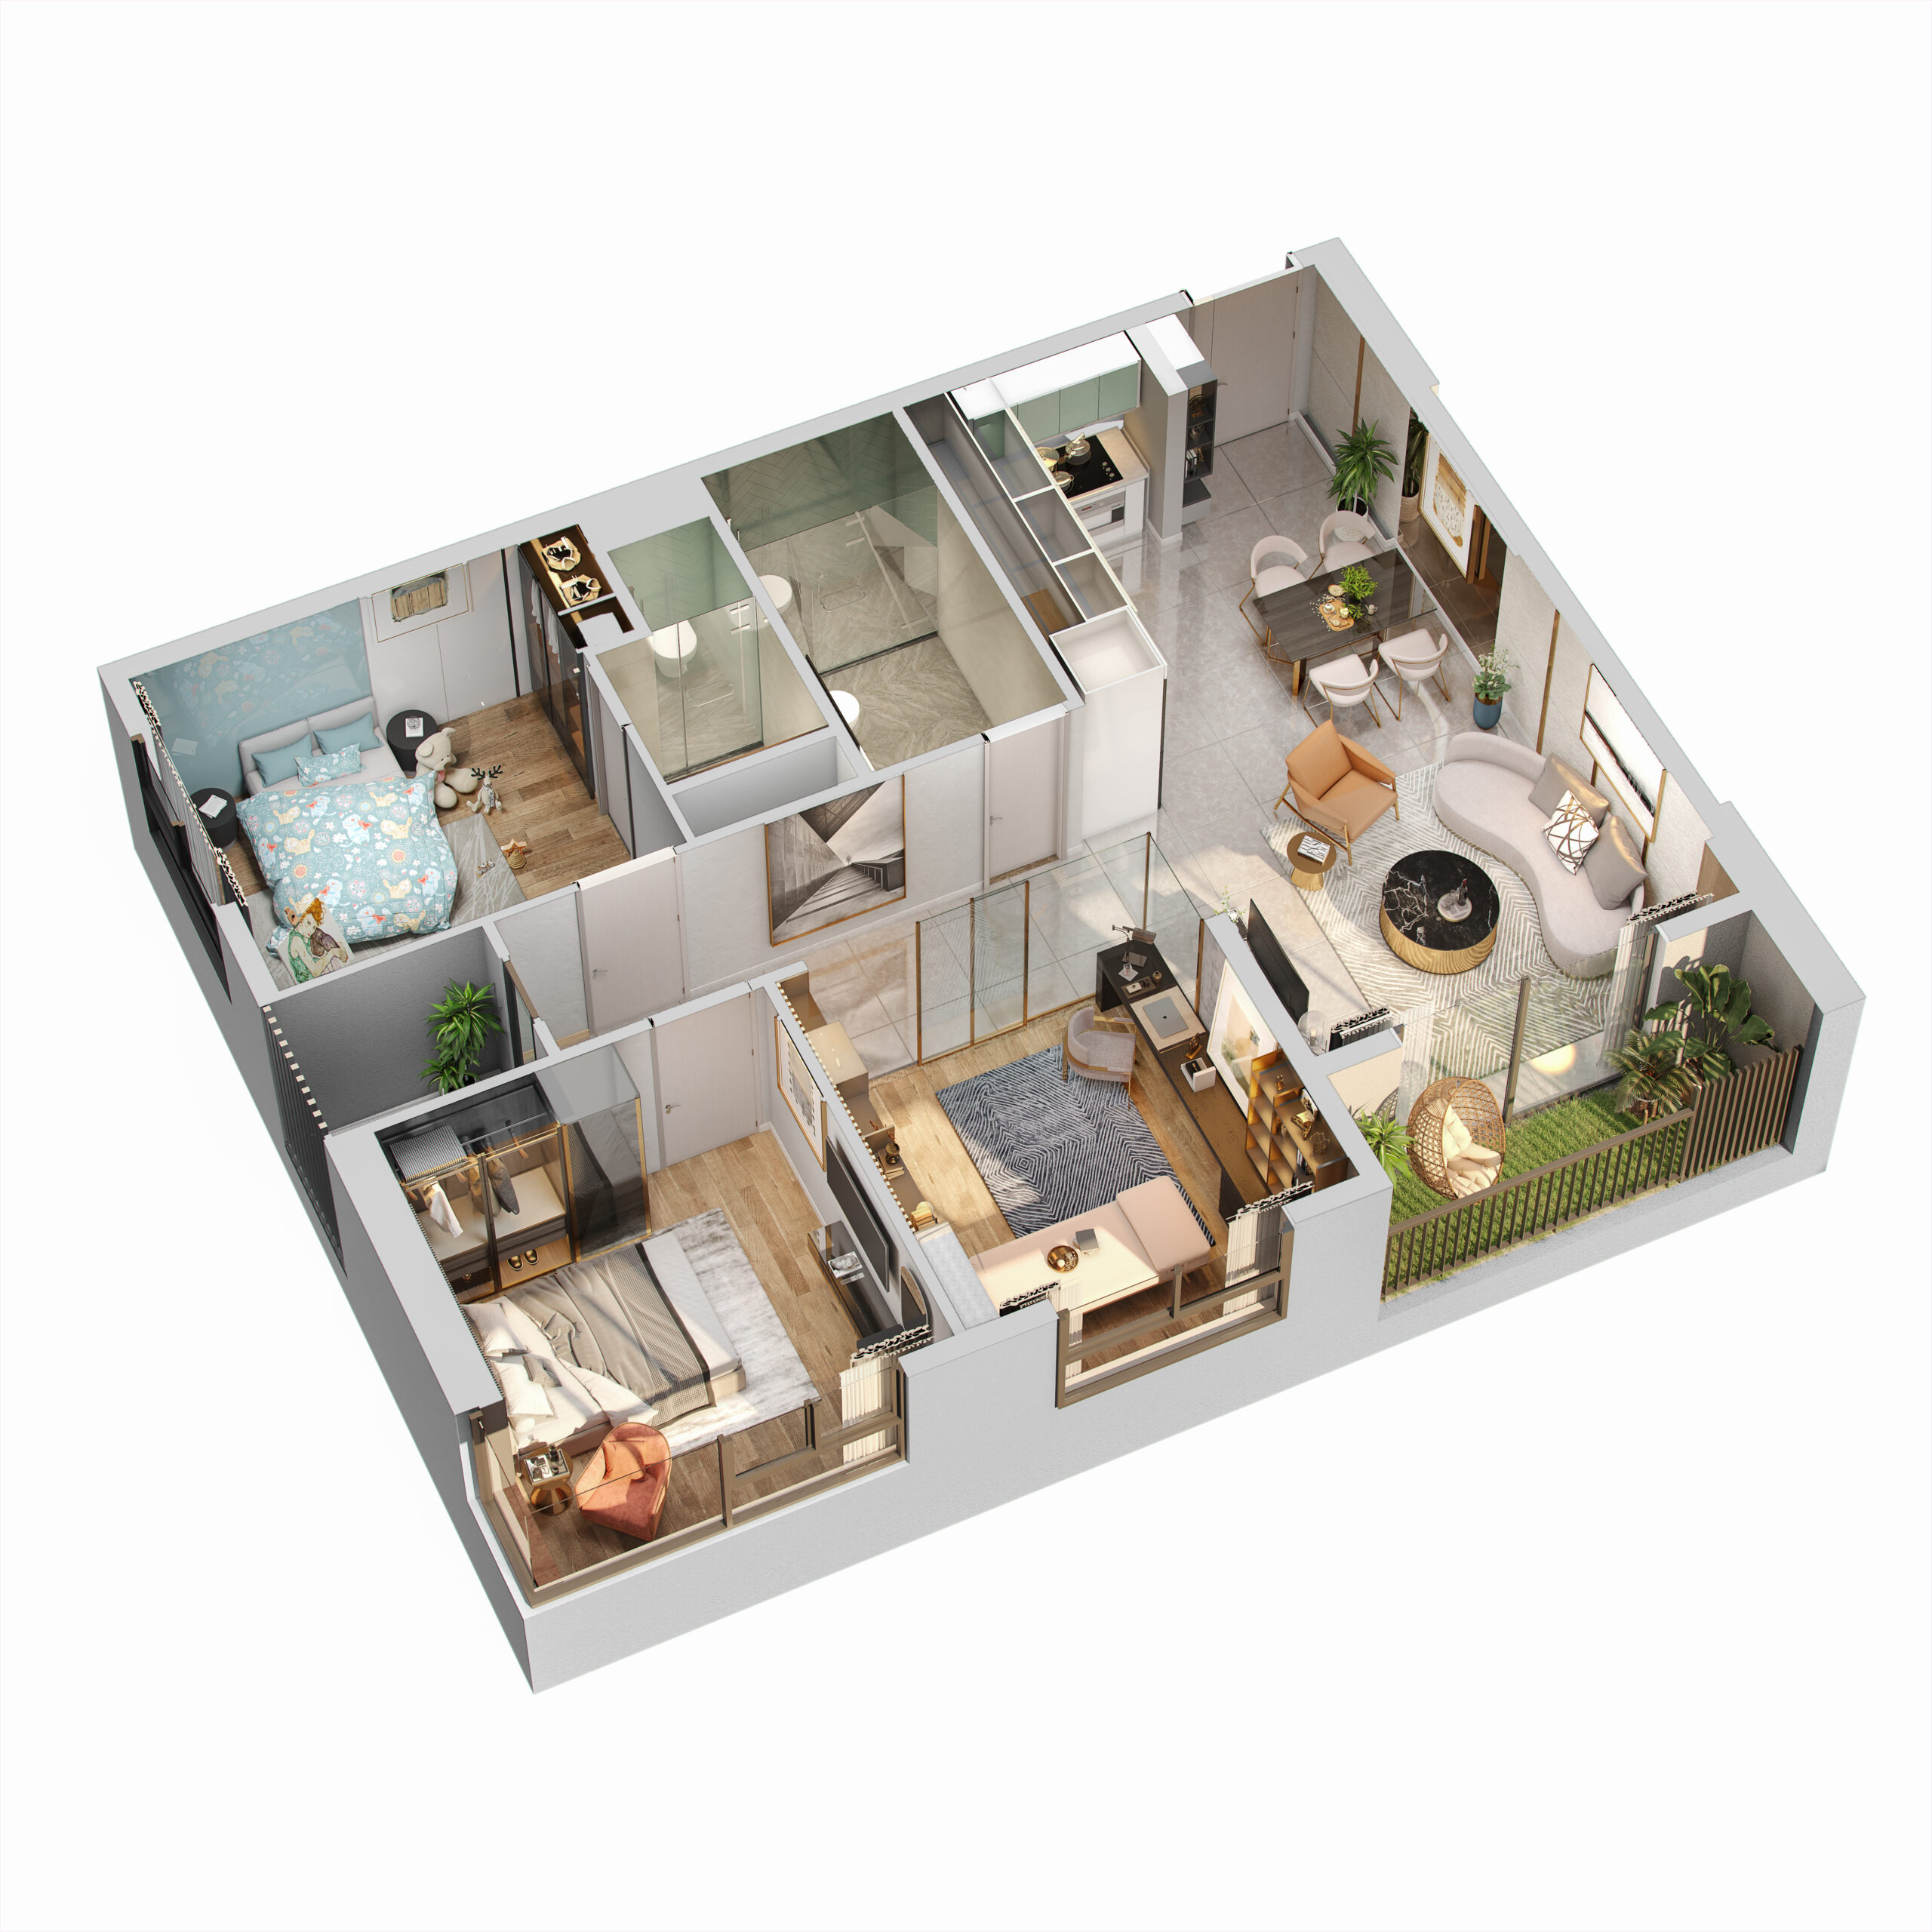 Thiết kế căn hộ3 phòng ngủ của C-River View Bình Dương